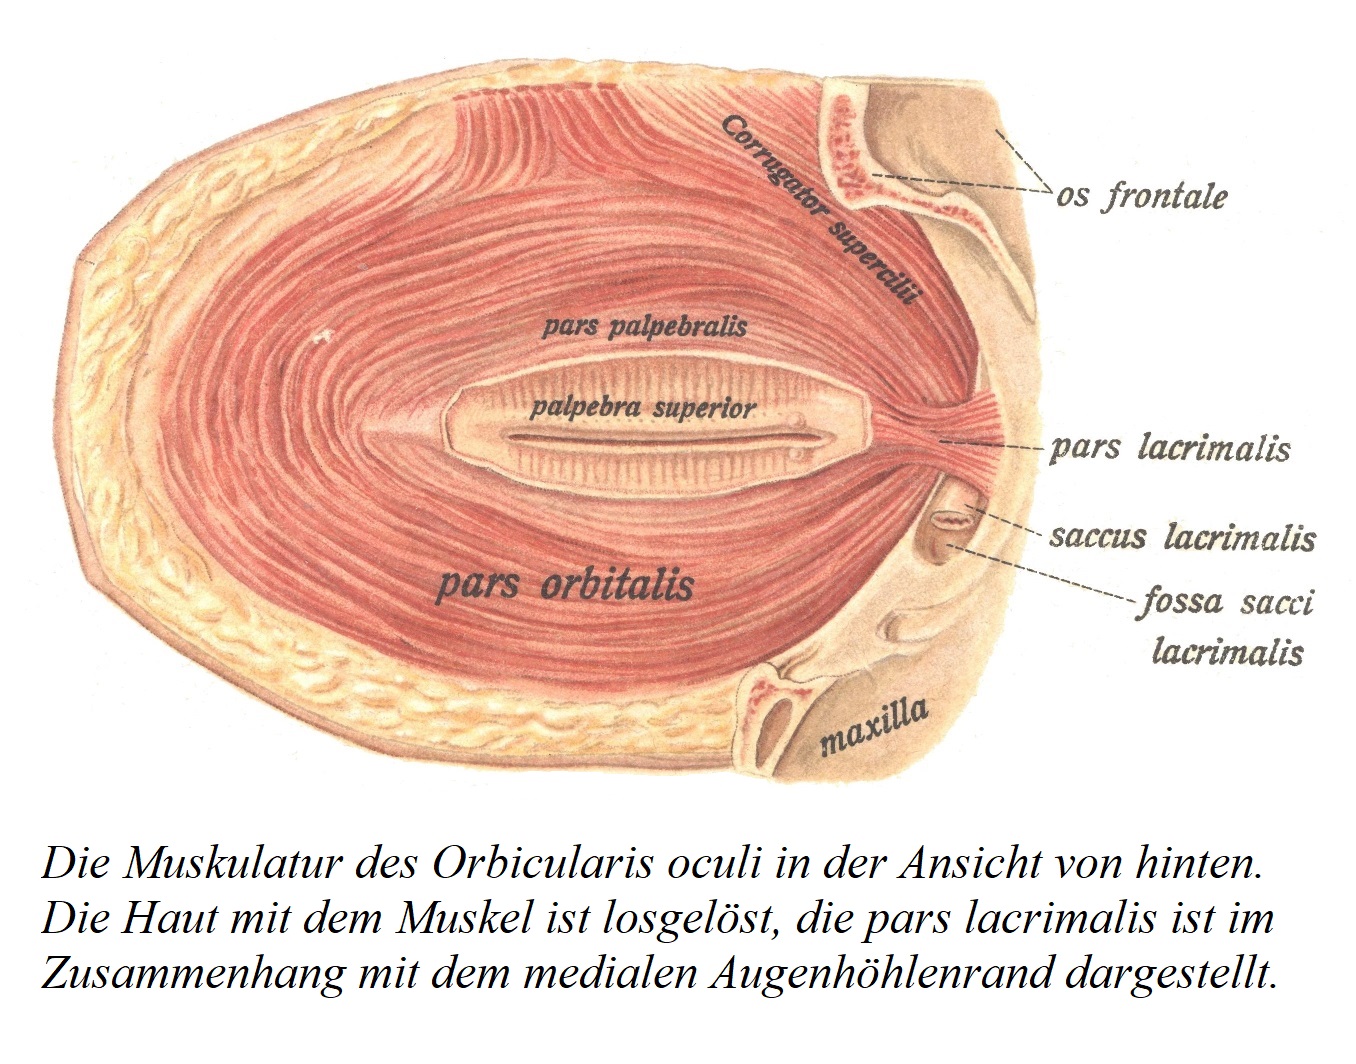 Мускулатура круговой мышцы глаза, вид сзади. Кожа с мышцей отслаивается, показана часть слезной мышцы в соединении с медиальным краем глазницы.